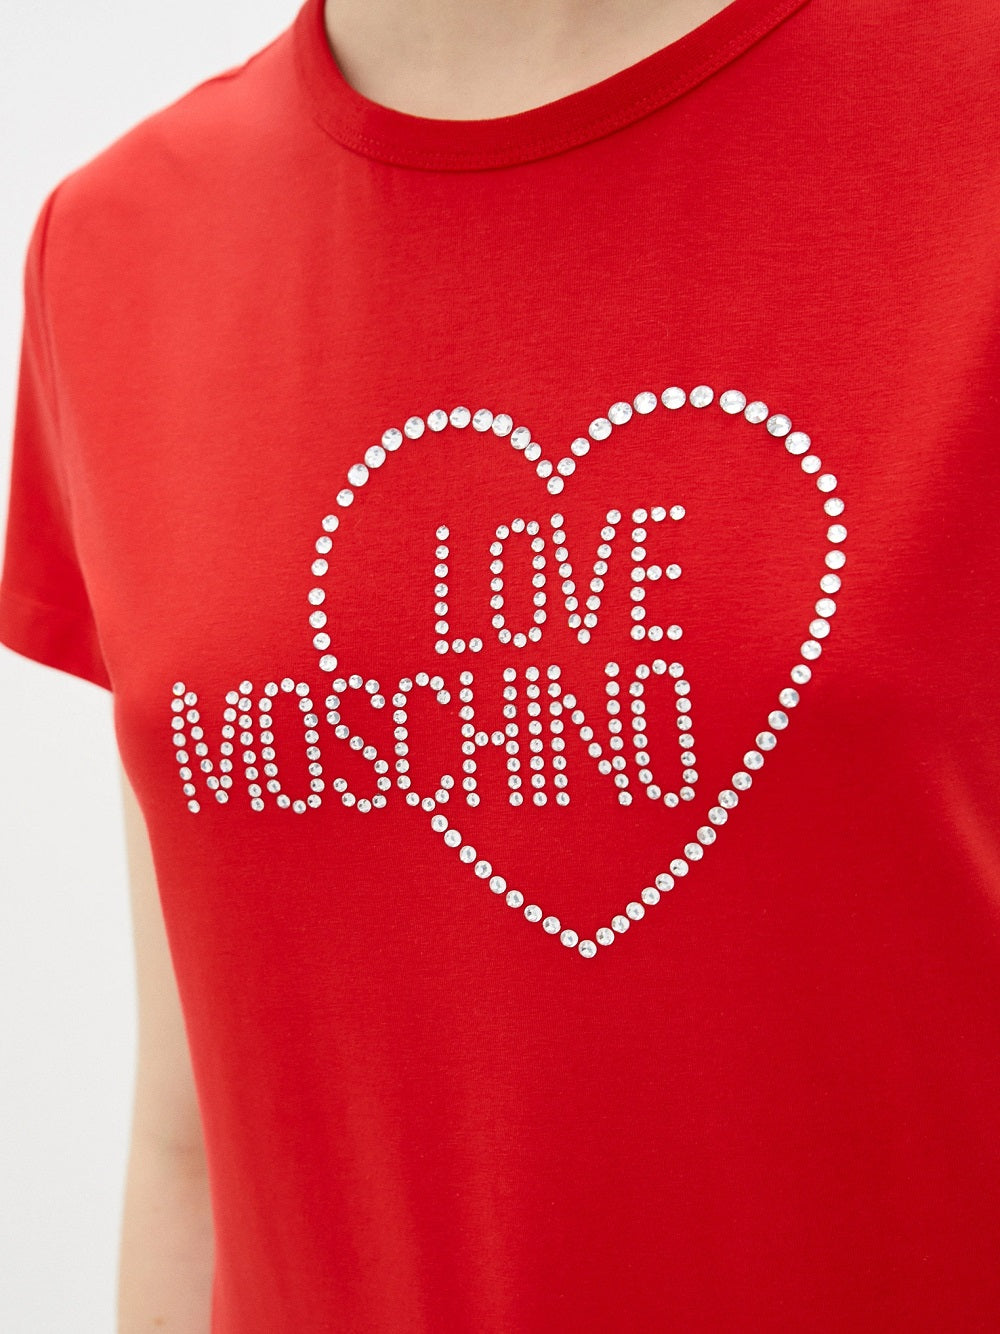 T-Shirt Love Moschino W4F731HE1951 realizzata interamente in cotone. Frontalmente la T-Shirt presenta dei brillantini applicati a formare il lettering del brand e cuore incorniciato.